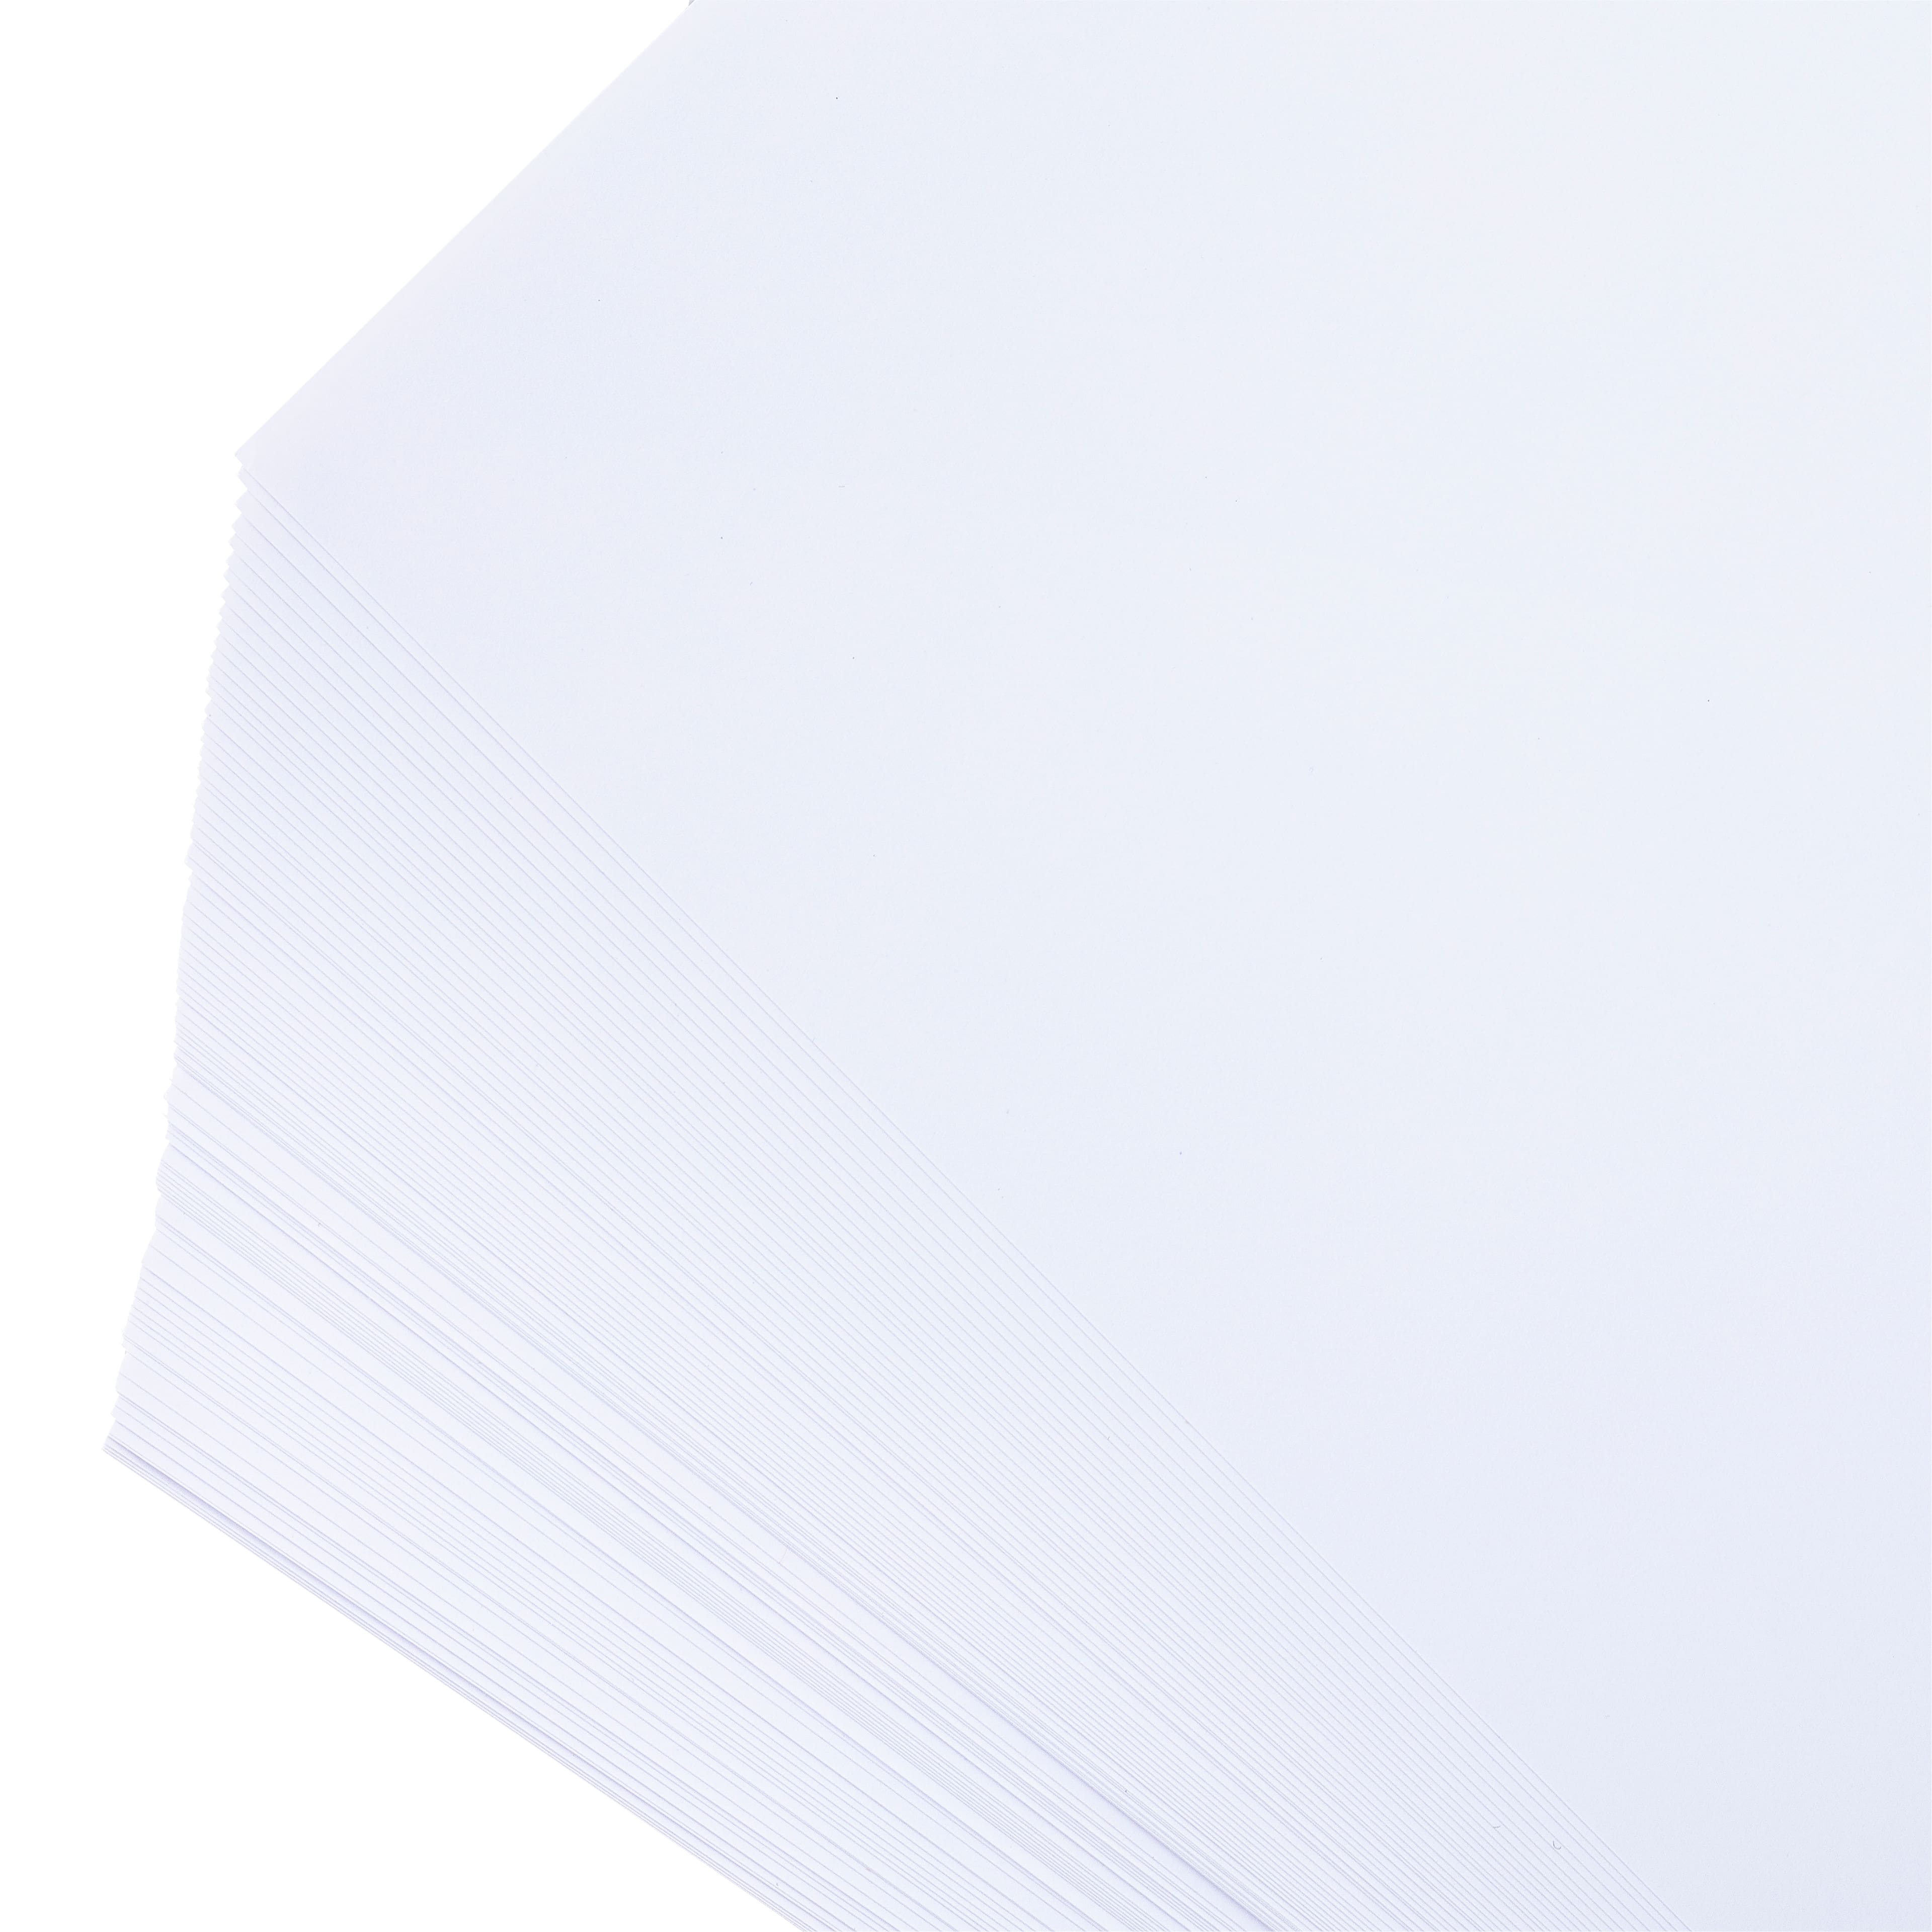 True Pix Classic Dye Sublimation Paper - 8.5 x 11 100 Sheets (90-0060-001)